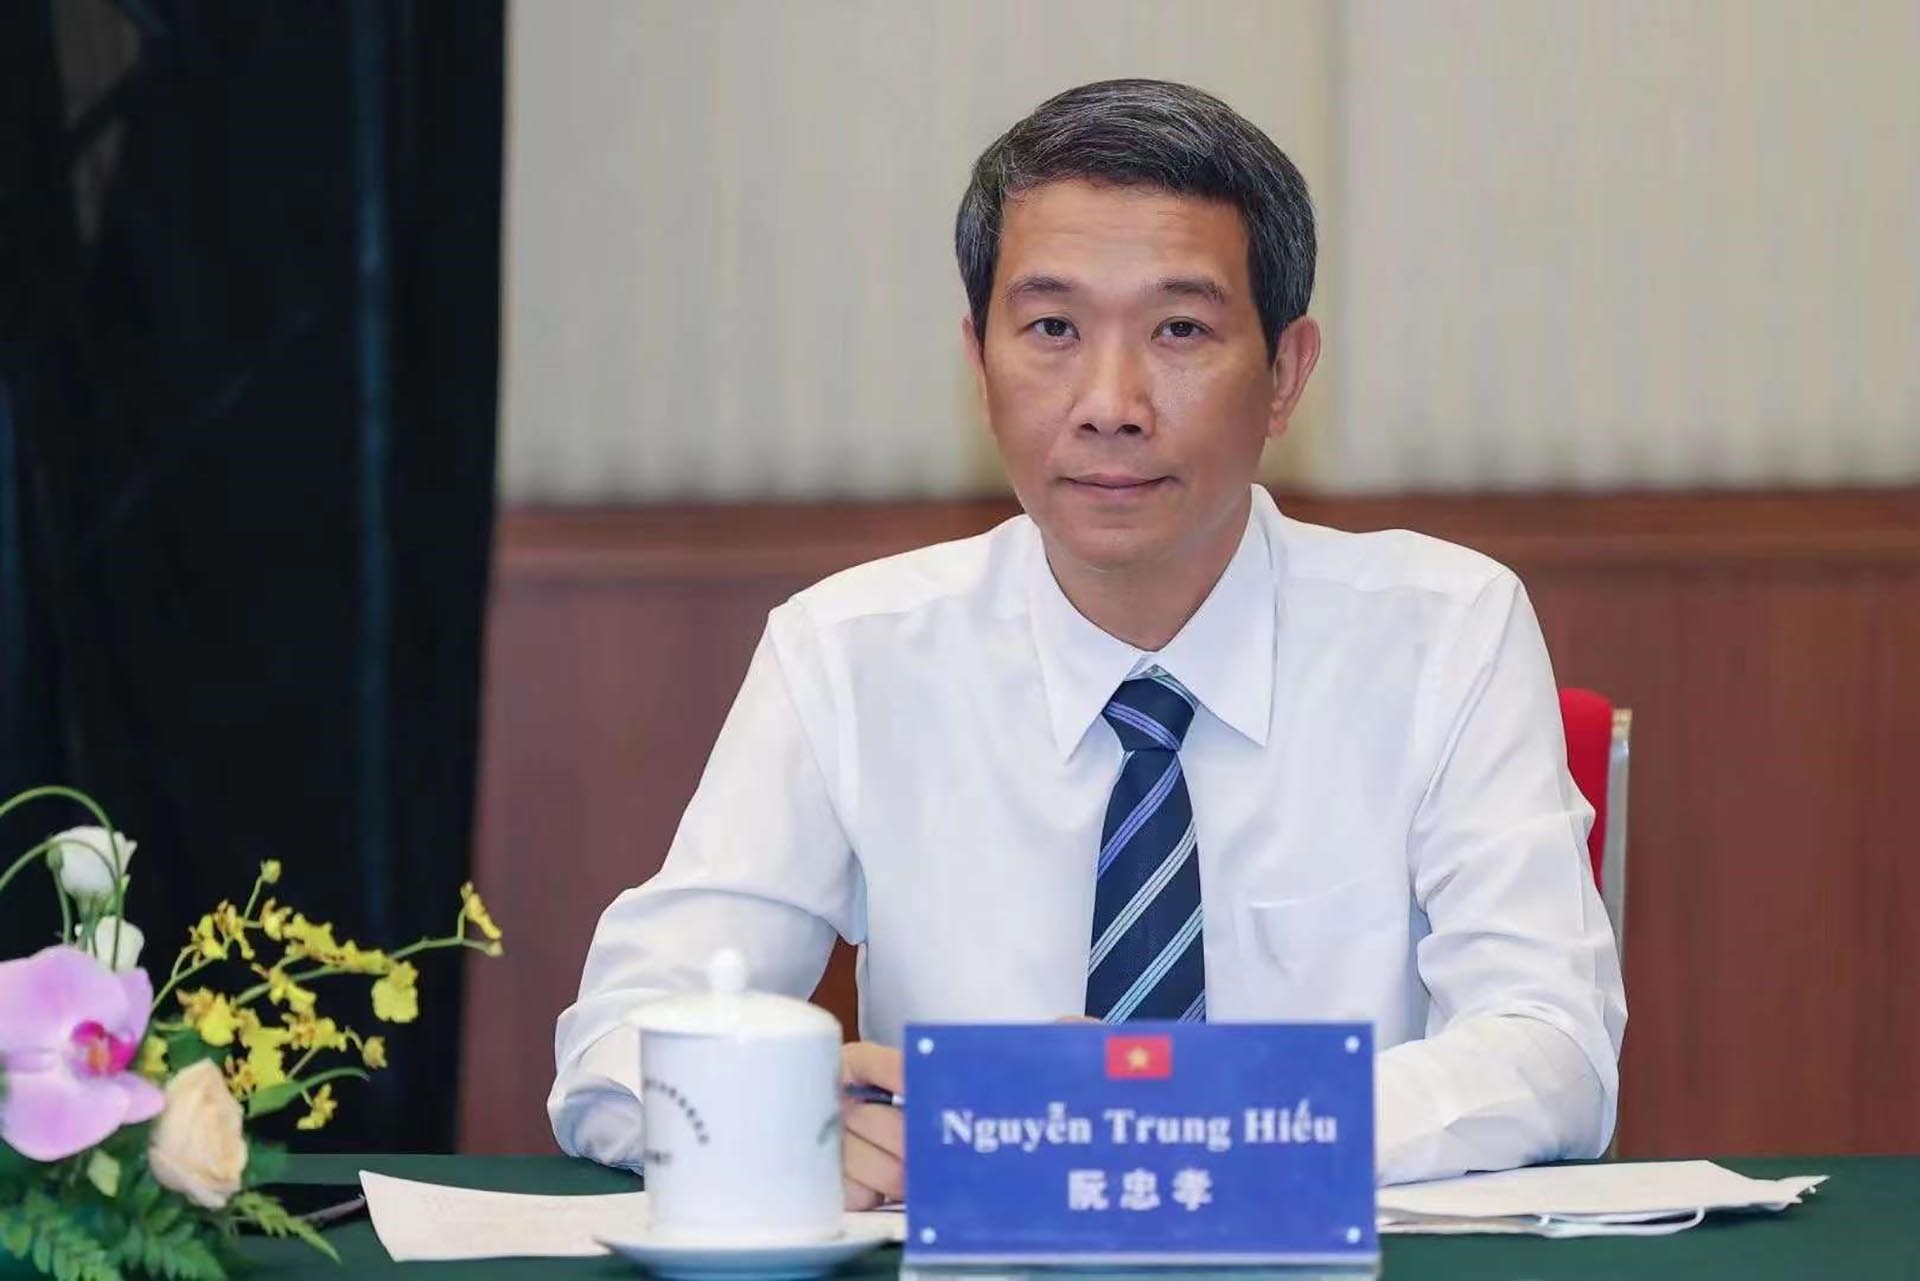 Tổng lãnh sự Nguyễn Trung Hiếu tham dự Hội đàm tại điểm cầu tỉnh Vân Nam theo lời mời của Hội đồng nhân dân tỉnh Hà Giang.